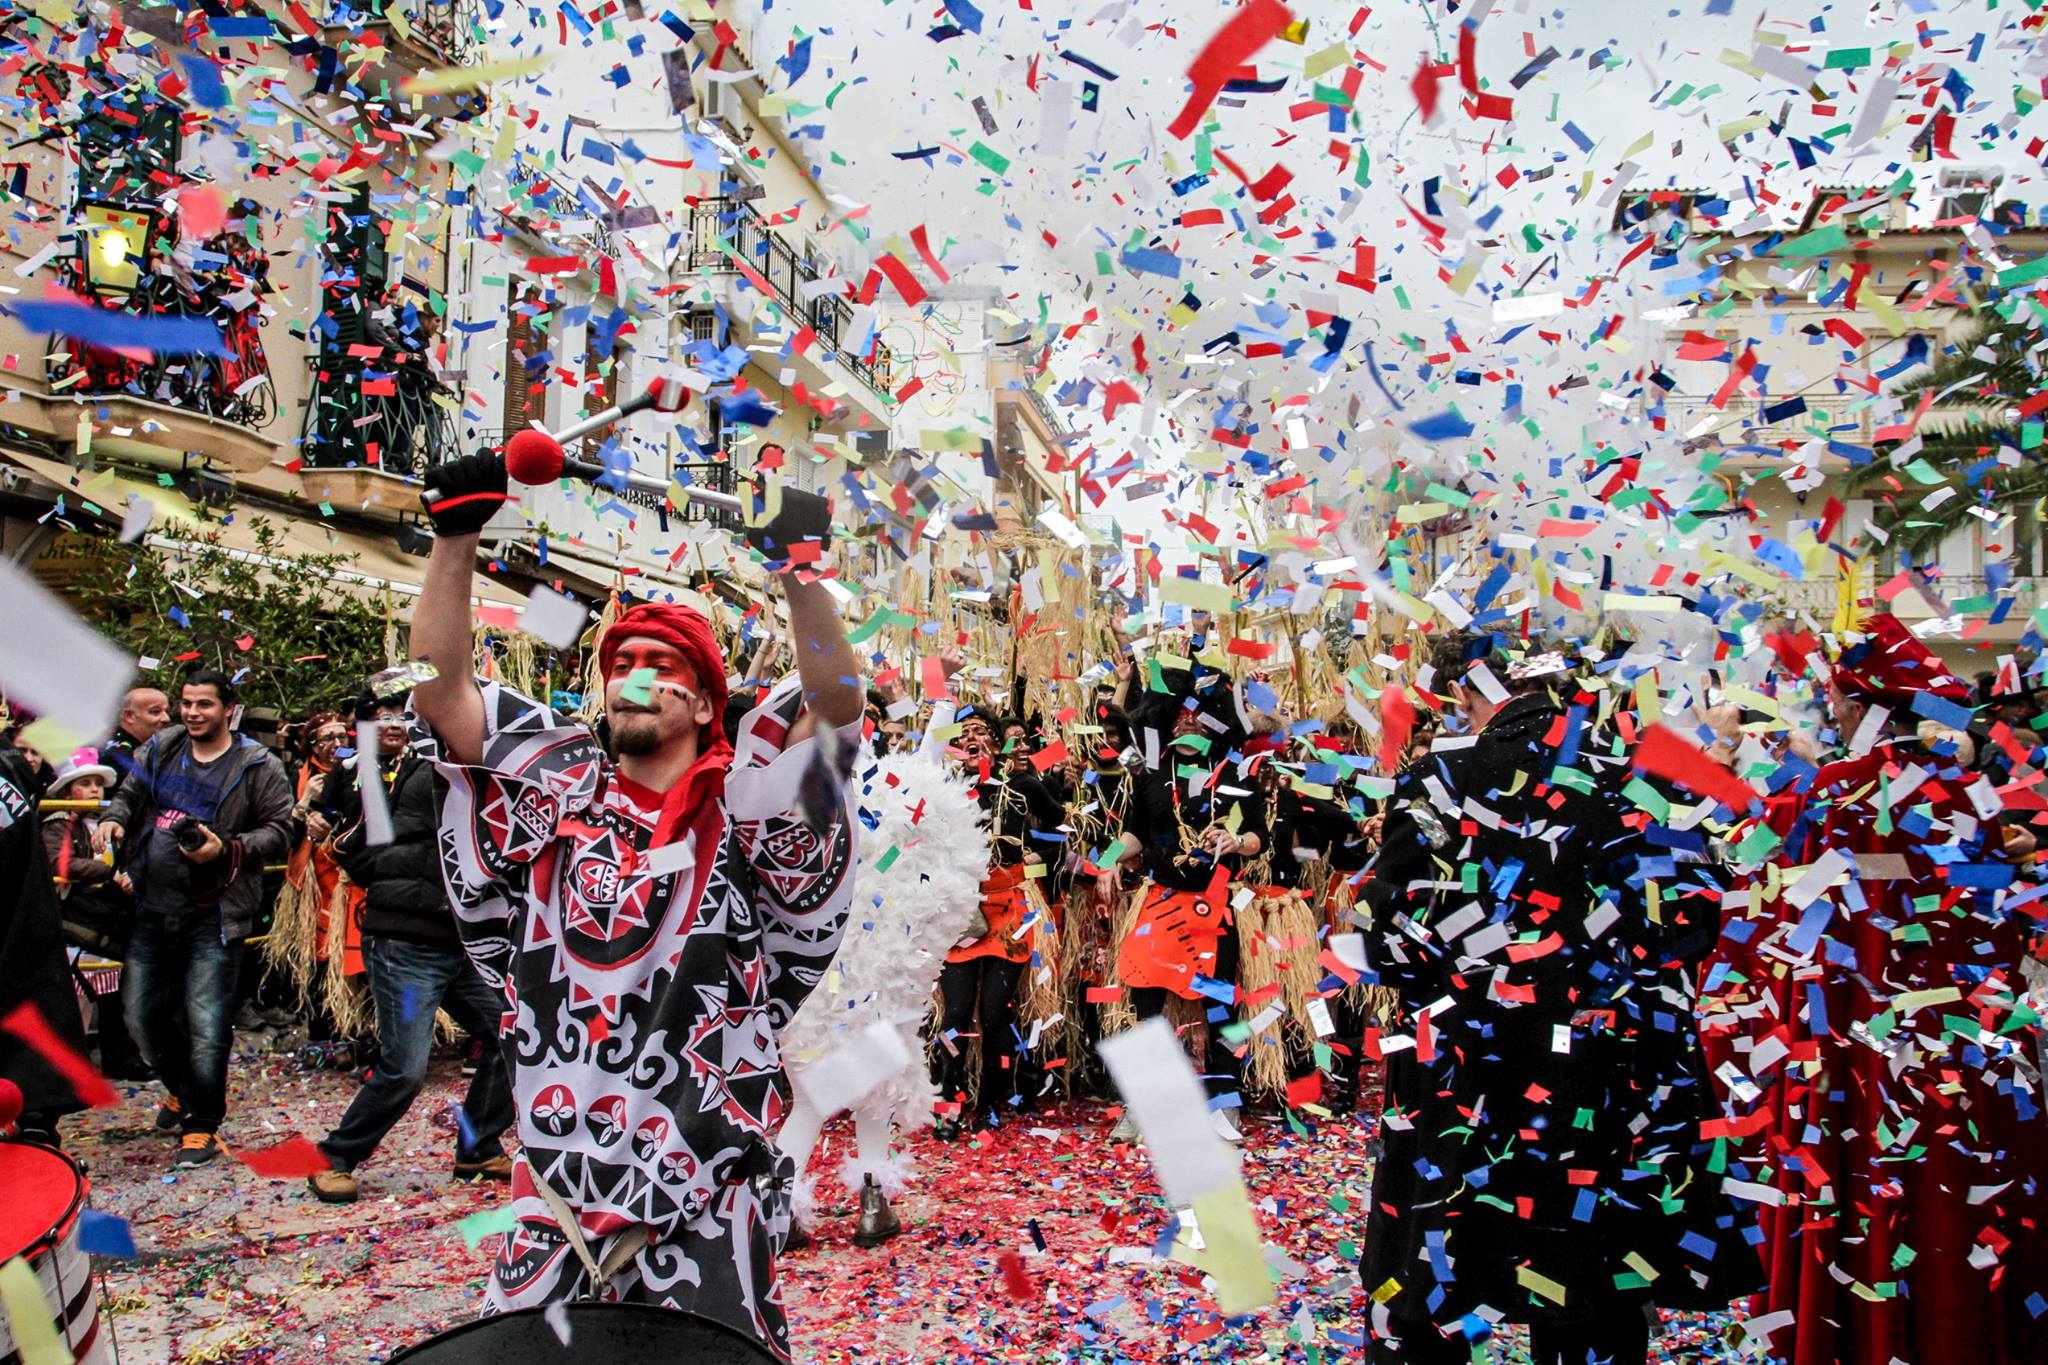 Carnival spirit culminates around Greece this week